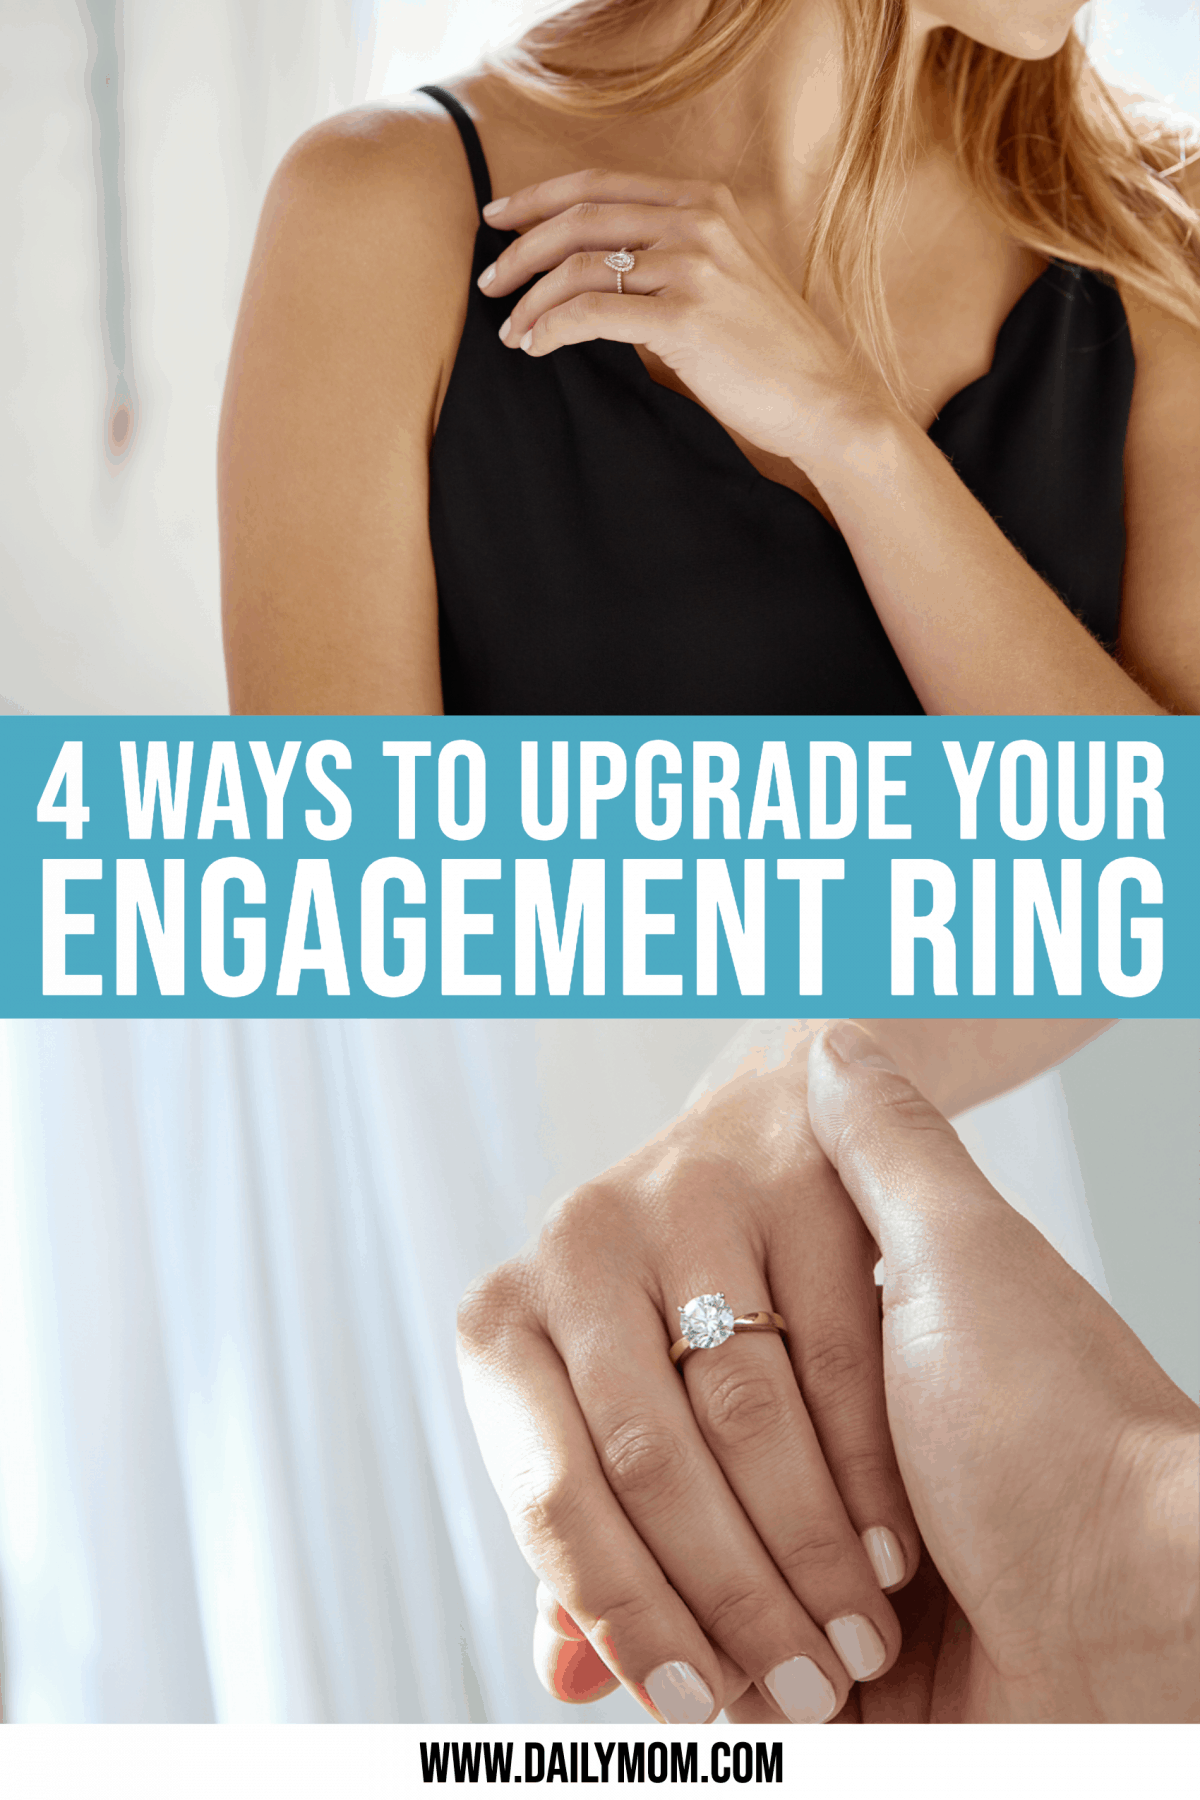 4 Ways To Upgrade Your Engagement Ring Like Megan Markle